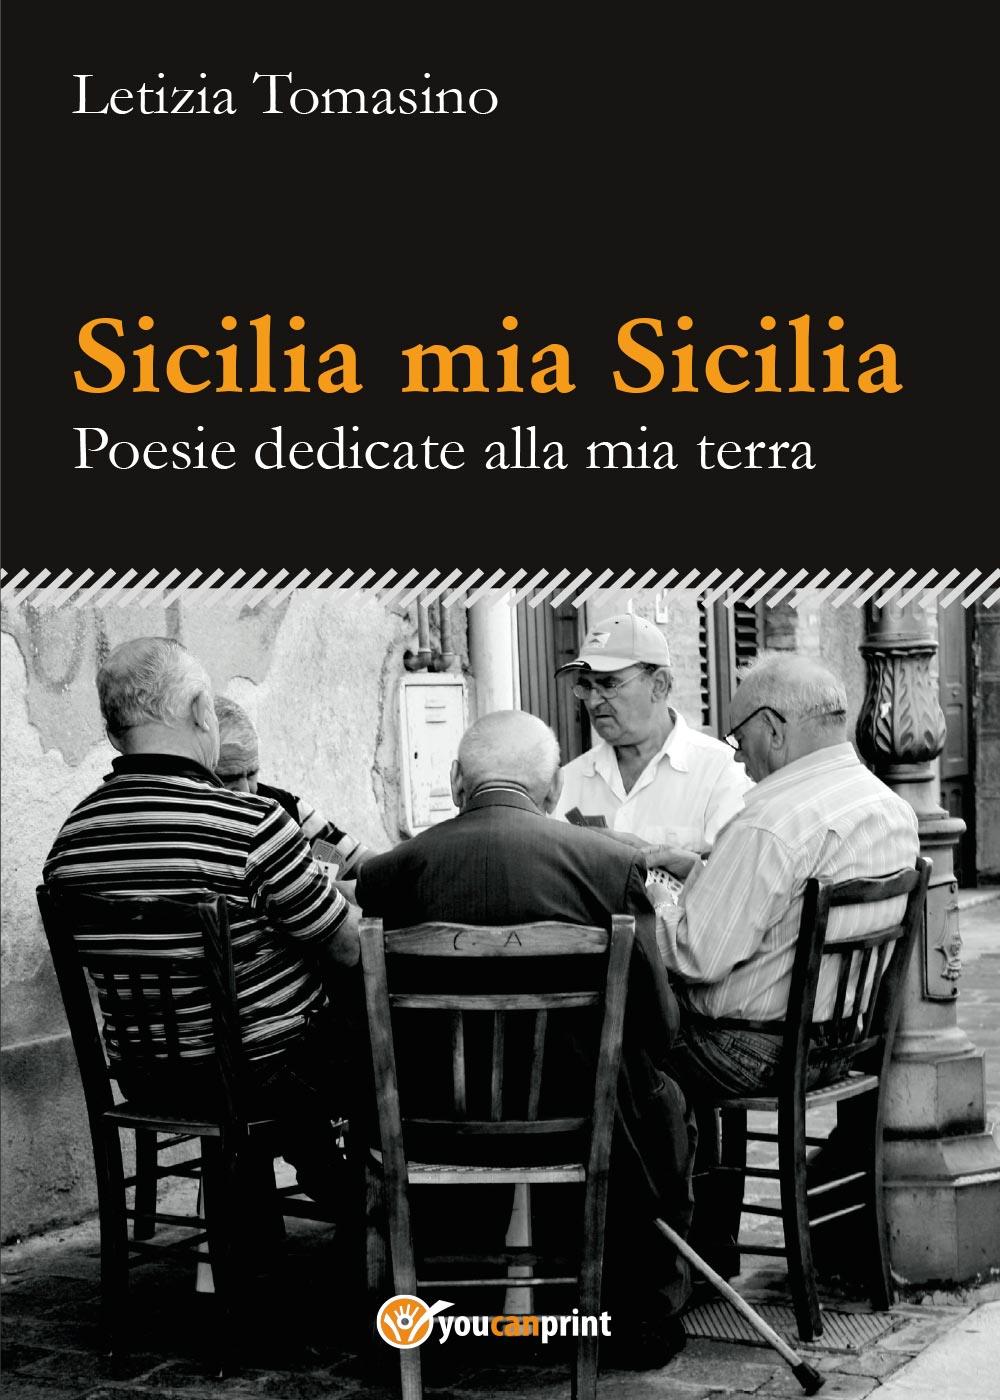 Sicilia mia Sicilia - Poesie dedicate alla mia terra